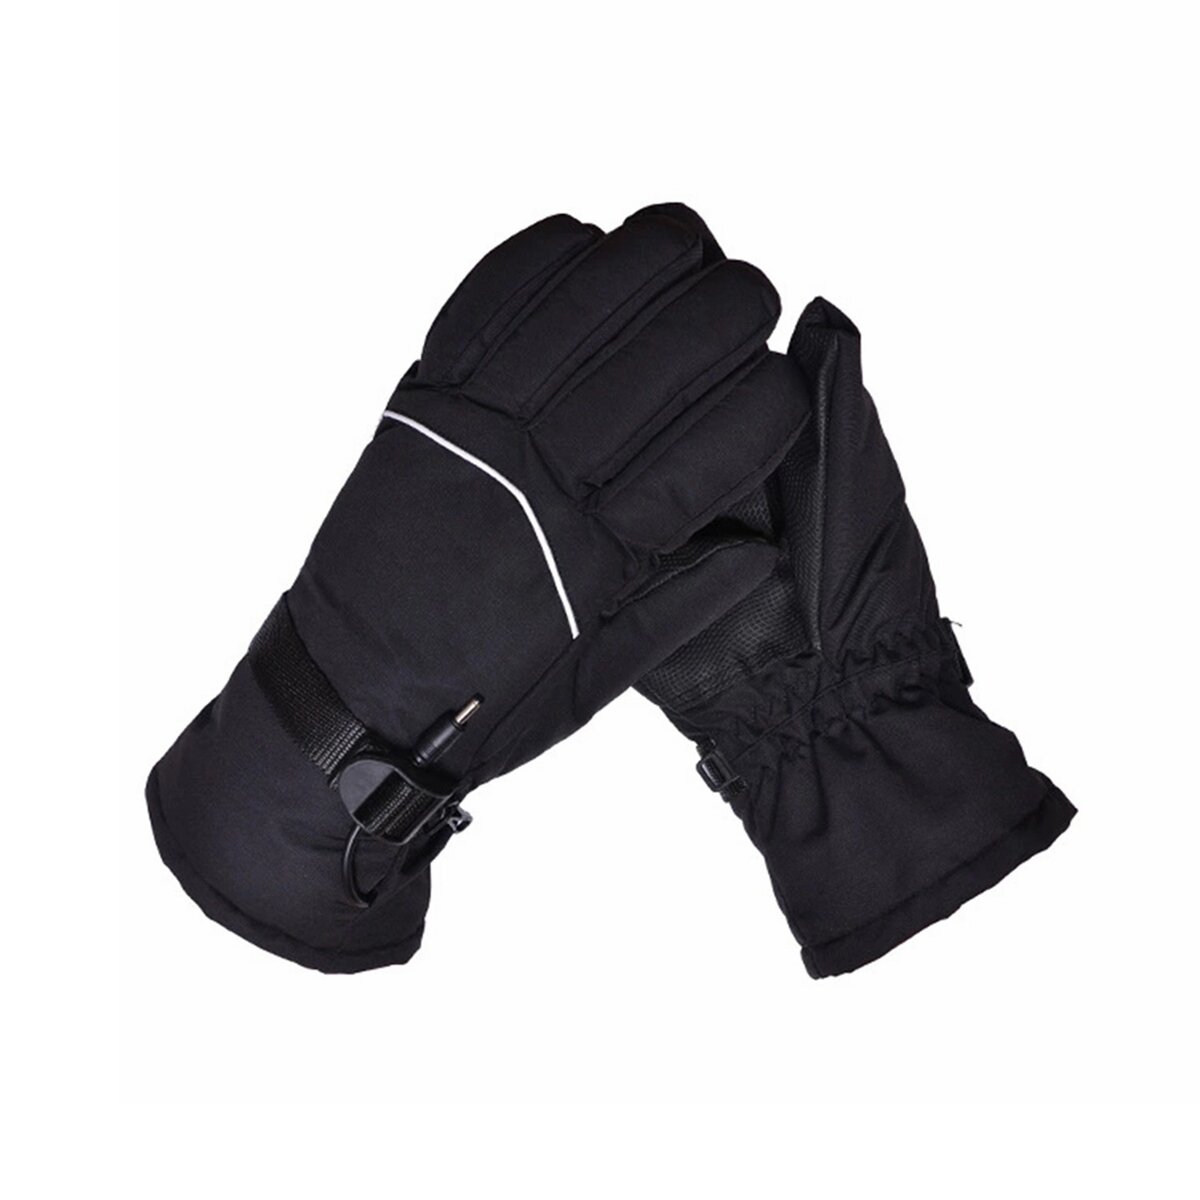 Tengoo 12V Electric Heating Gloves Waterproof Thermal Winter Hand Warmer Motorcycle